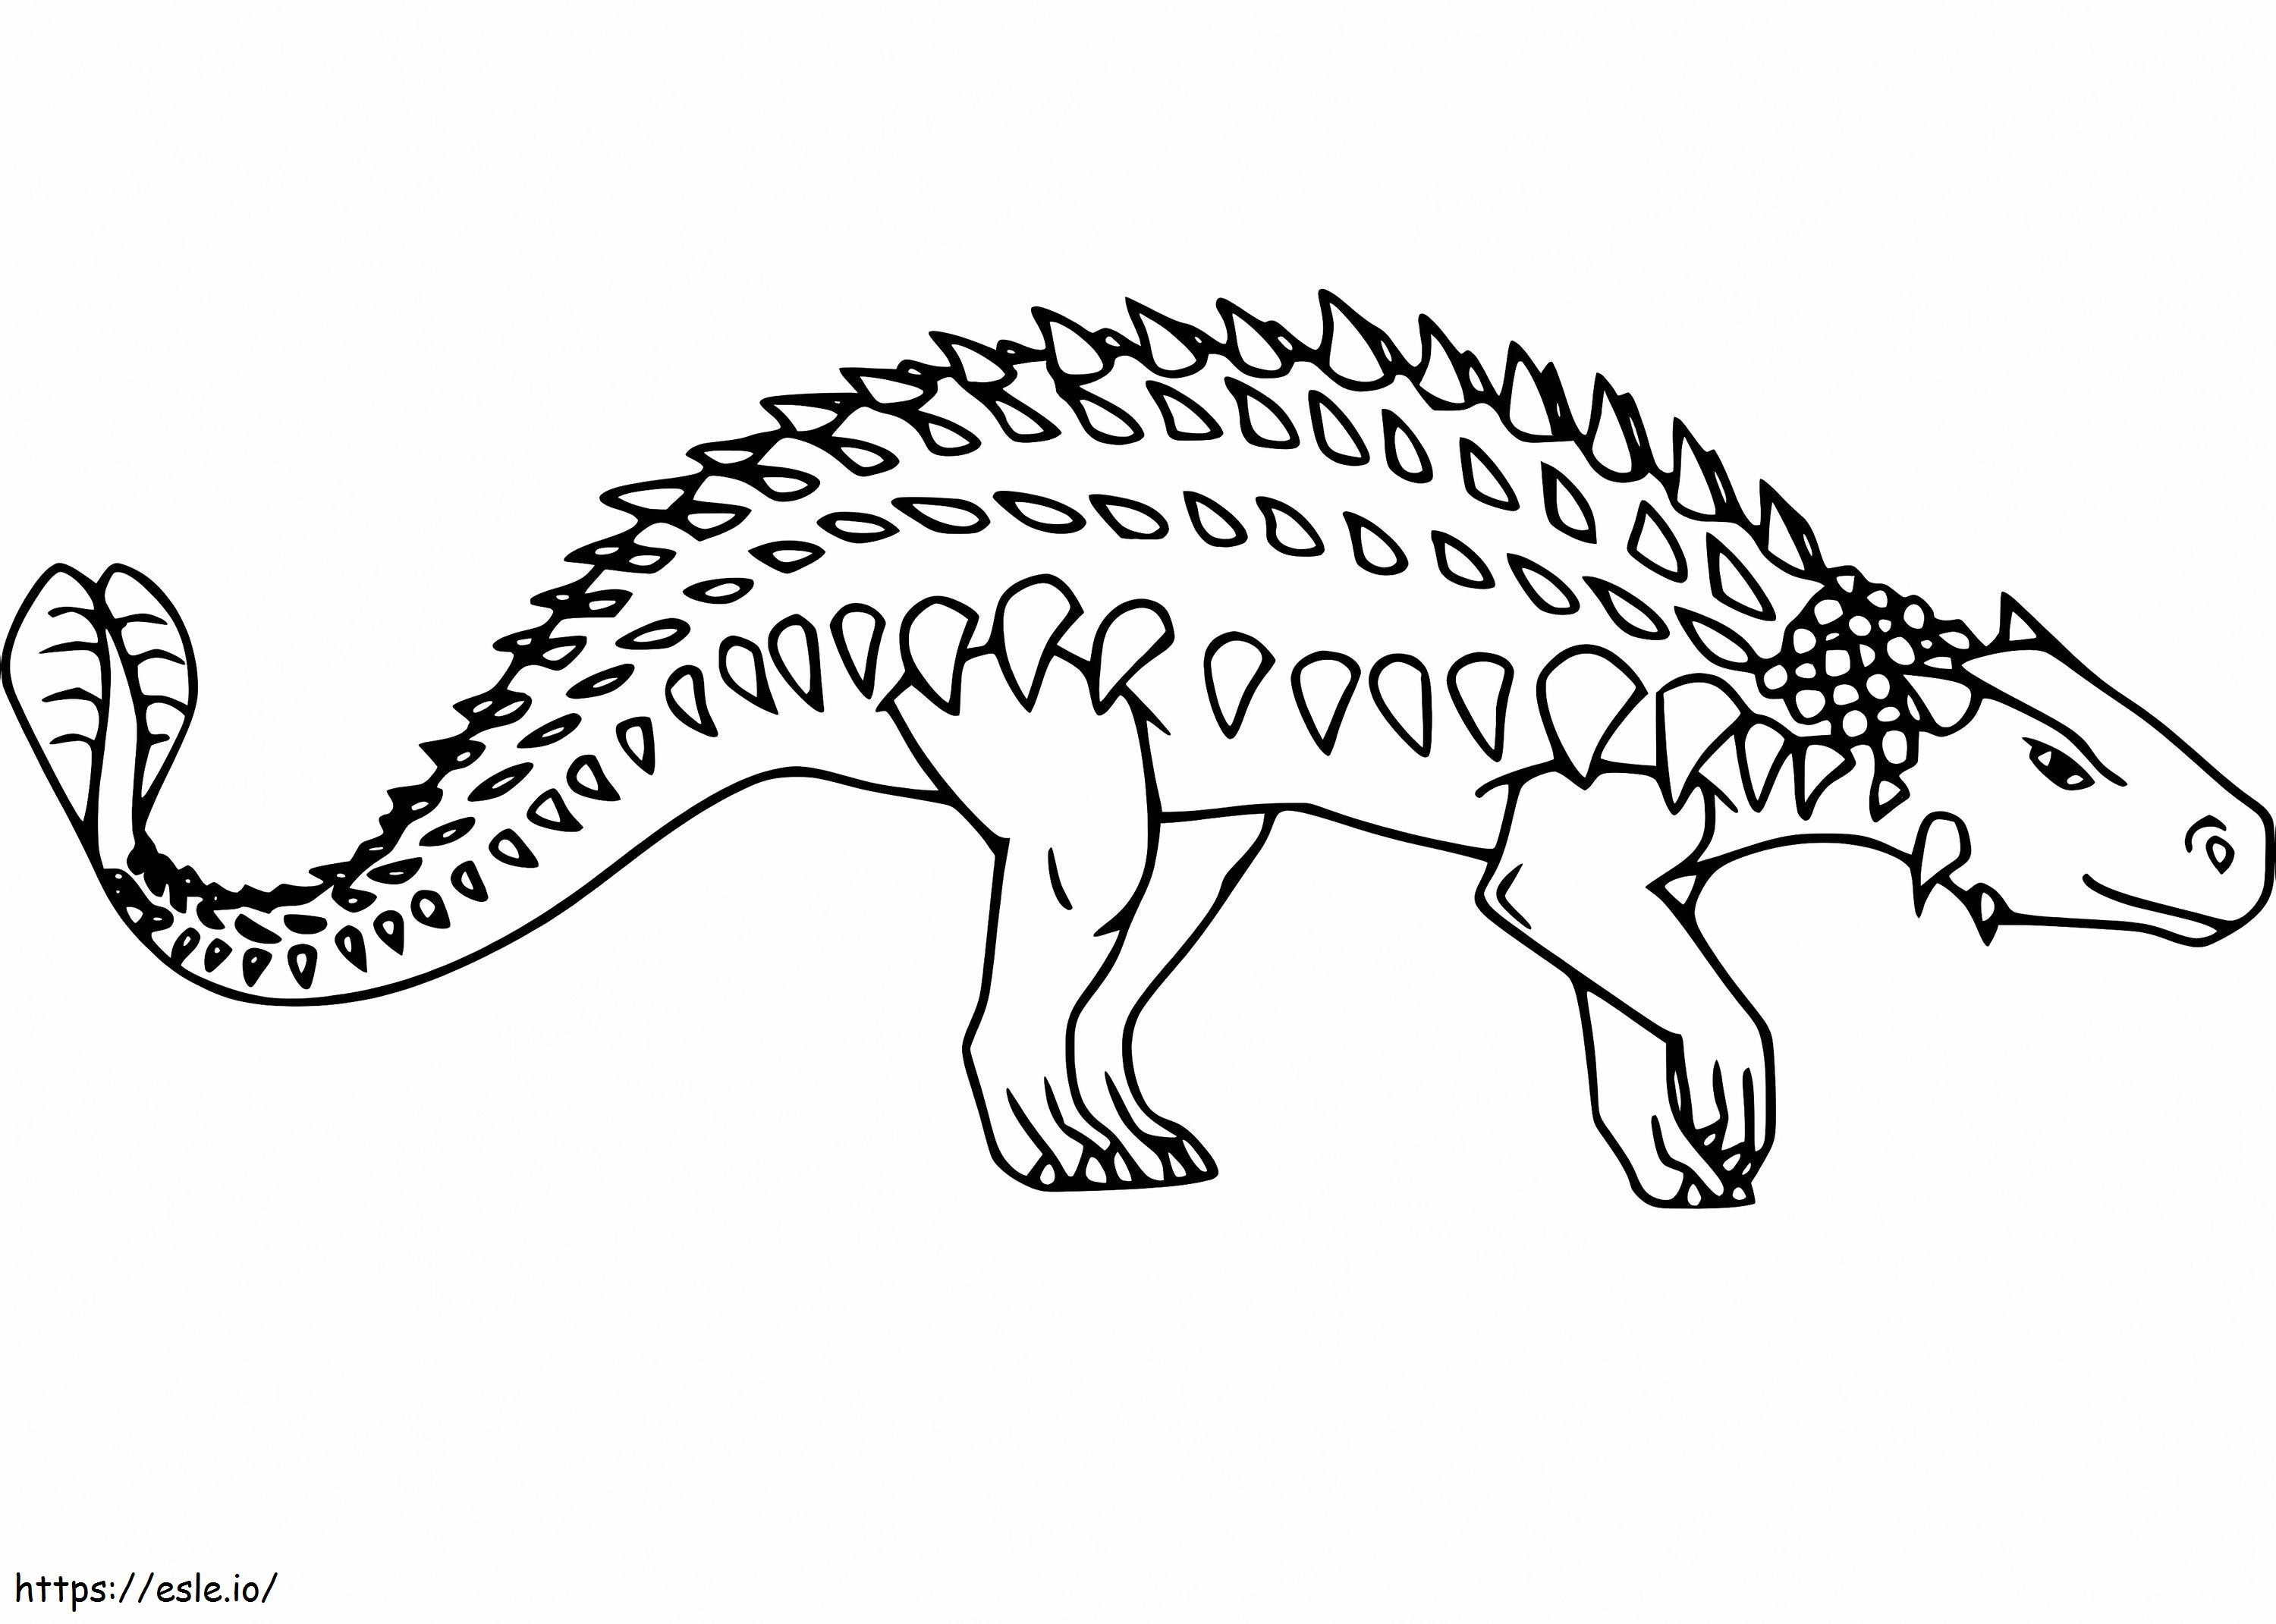 Ankylosaurus Walking coloring page